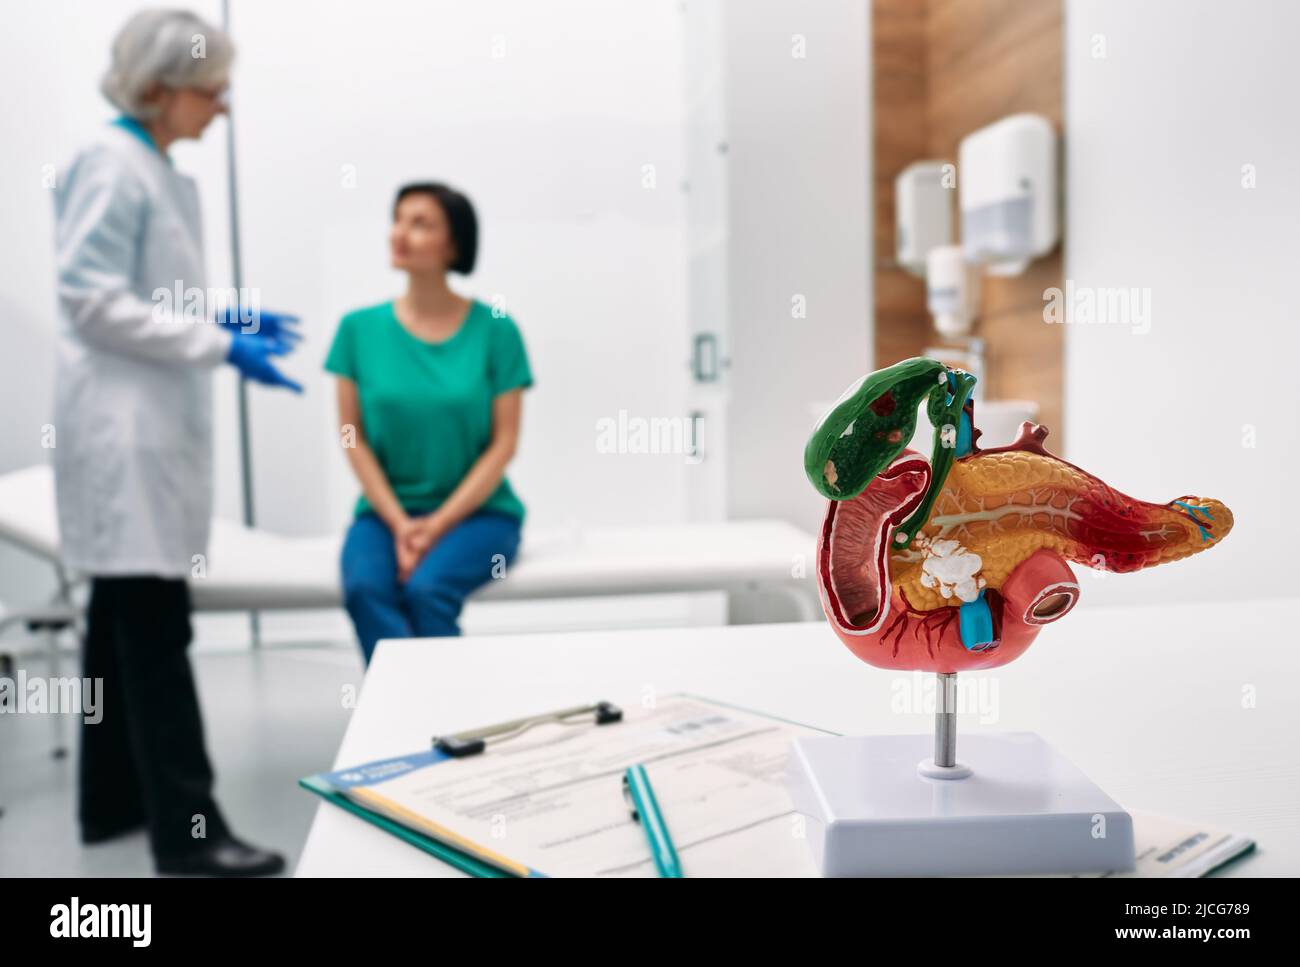 Konsultation zur Gastroenterologie. Anatomisches Modell der Bauchspeicheldrüse auf dem Arzttisch über dem Hintergrund Gastroenterologe, der eine Patientin mit Gastroint konsultiert Stockfoto